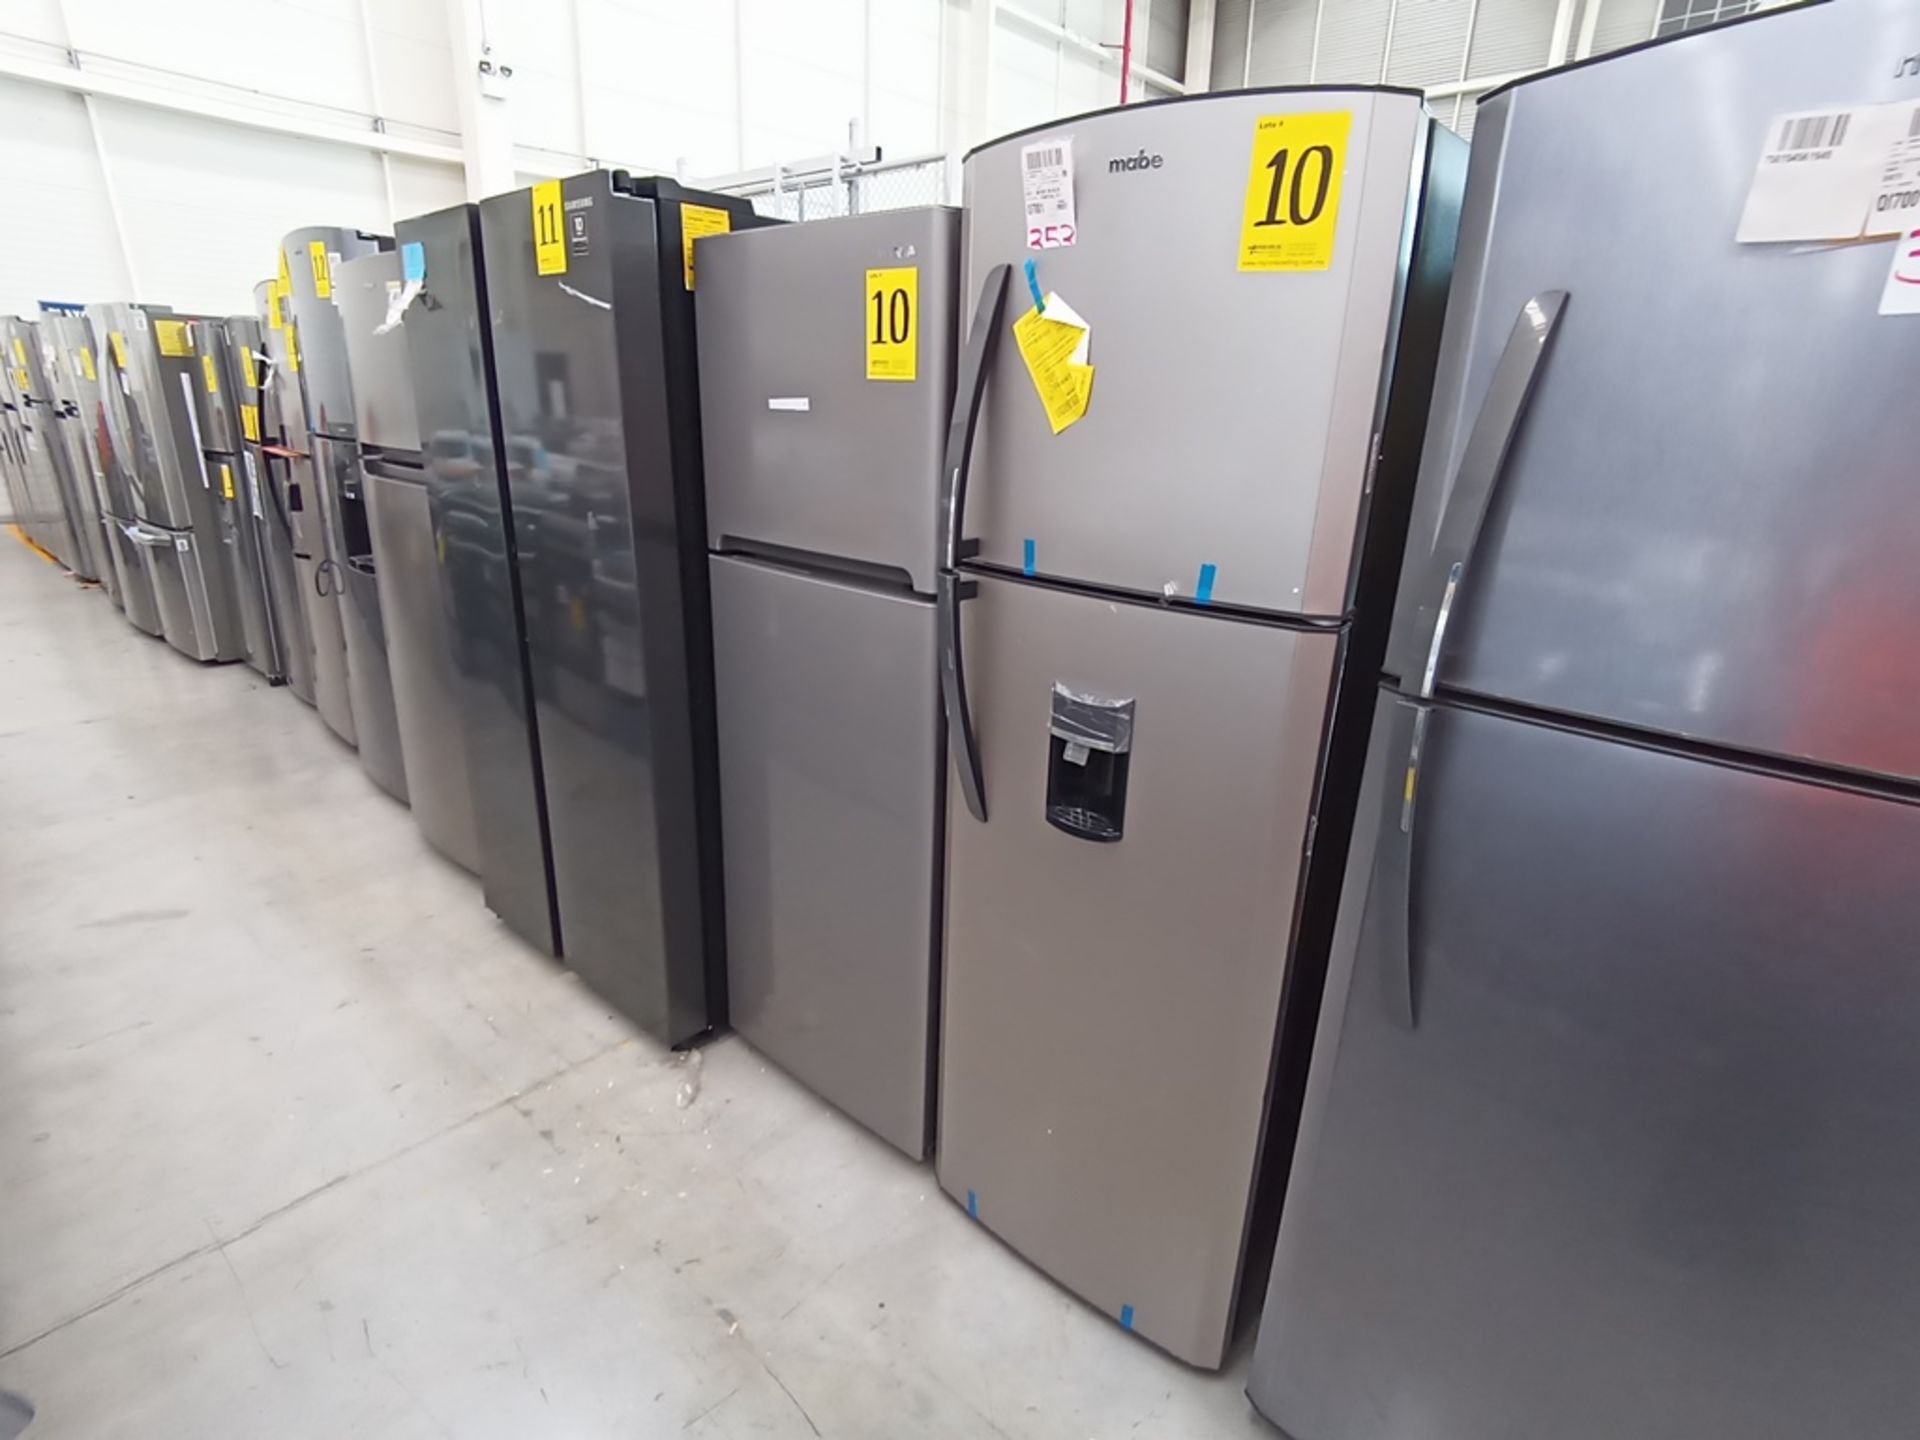 Lote de 2 refrigeradores contiene: 1 Refrigerador con dispensador de agua, Marca Mabe, Modelo RMA11 - Image 2 of 15